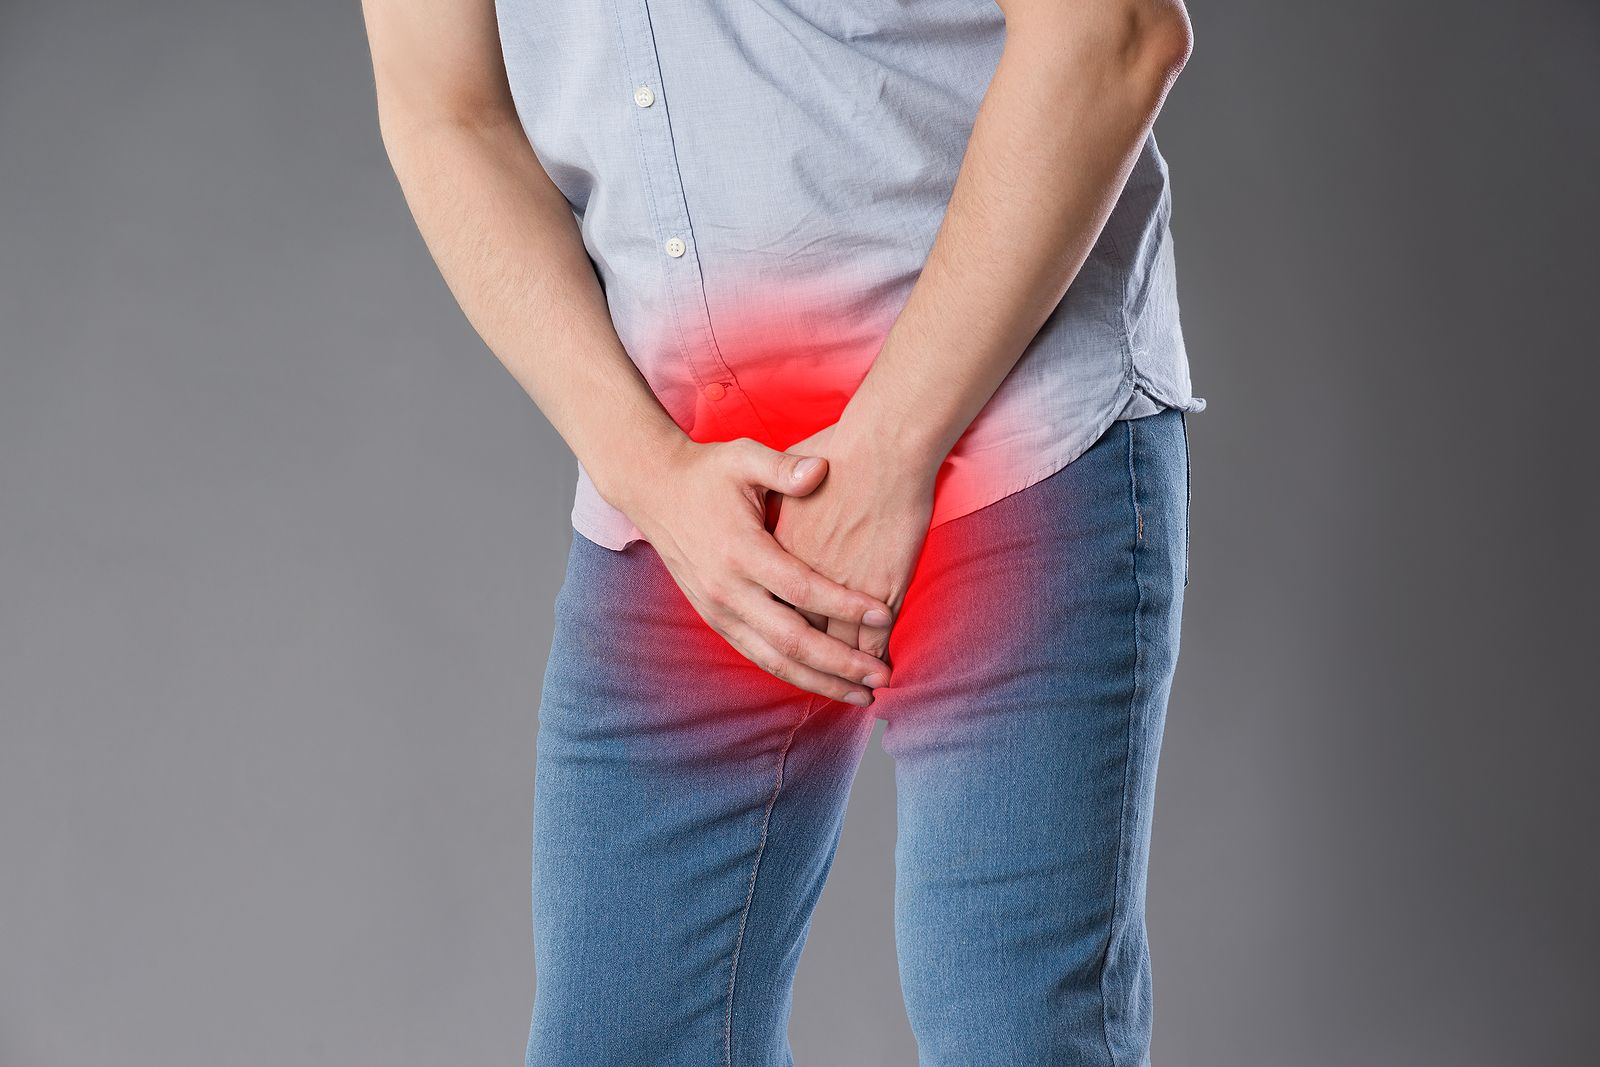 ¿Por qué duele tanto una patada en los testículos? Foto: bigstock